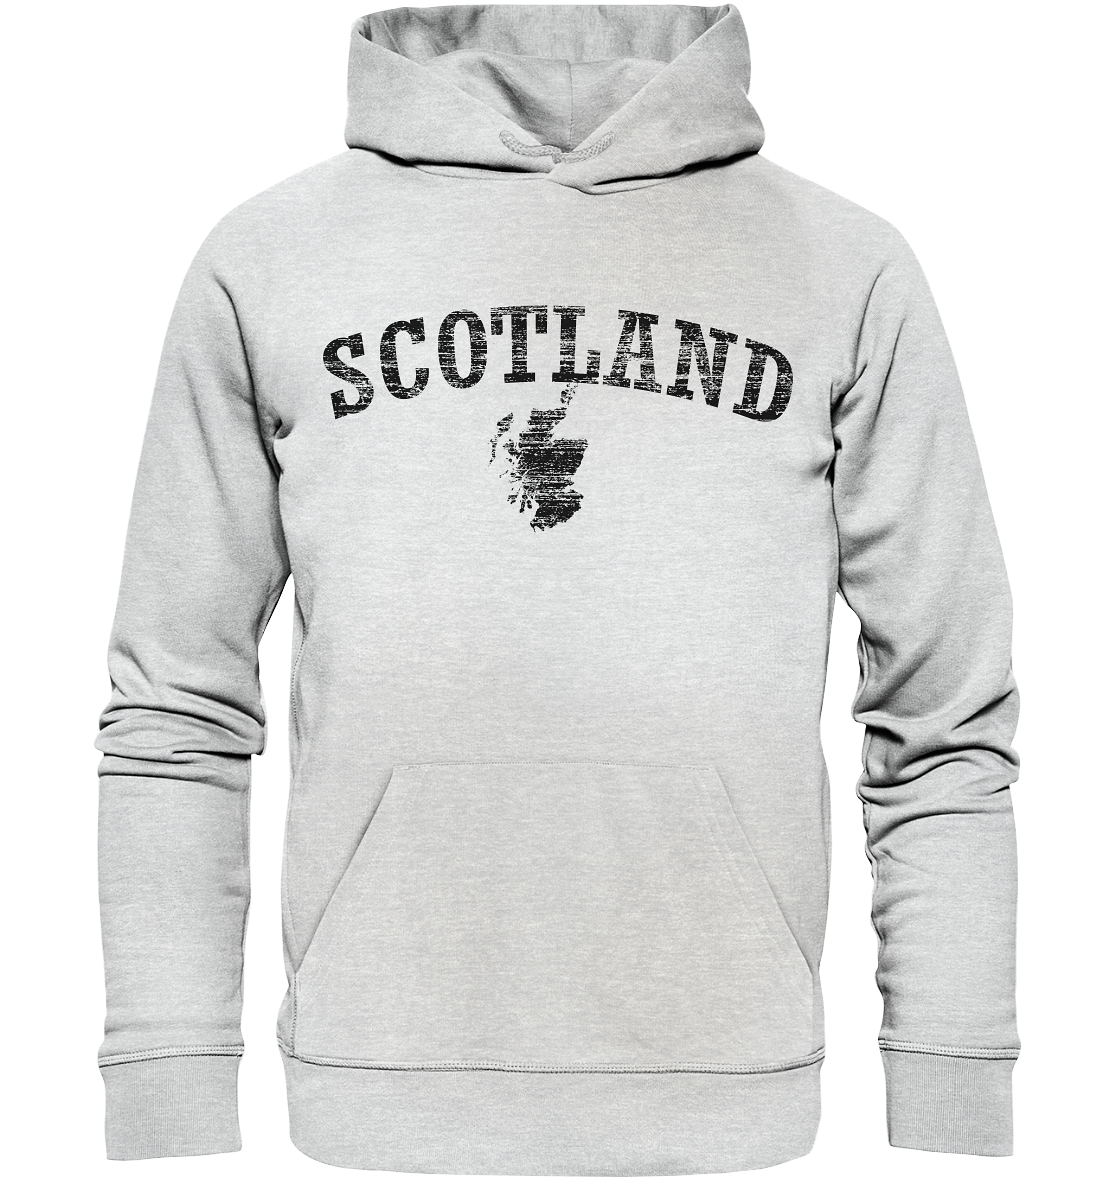 Scotland "Landscape" - Premium Unisex Hoodie